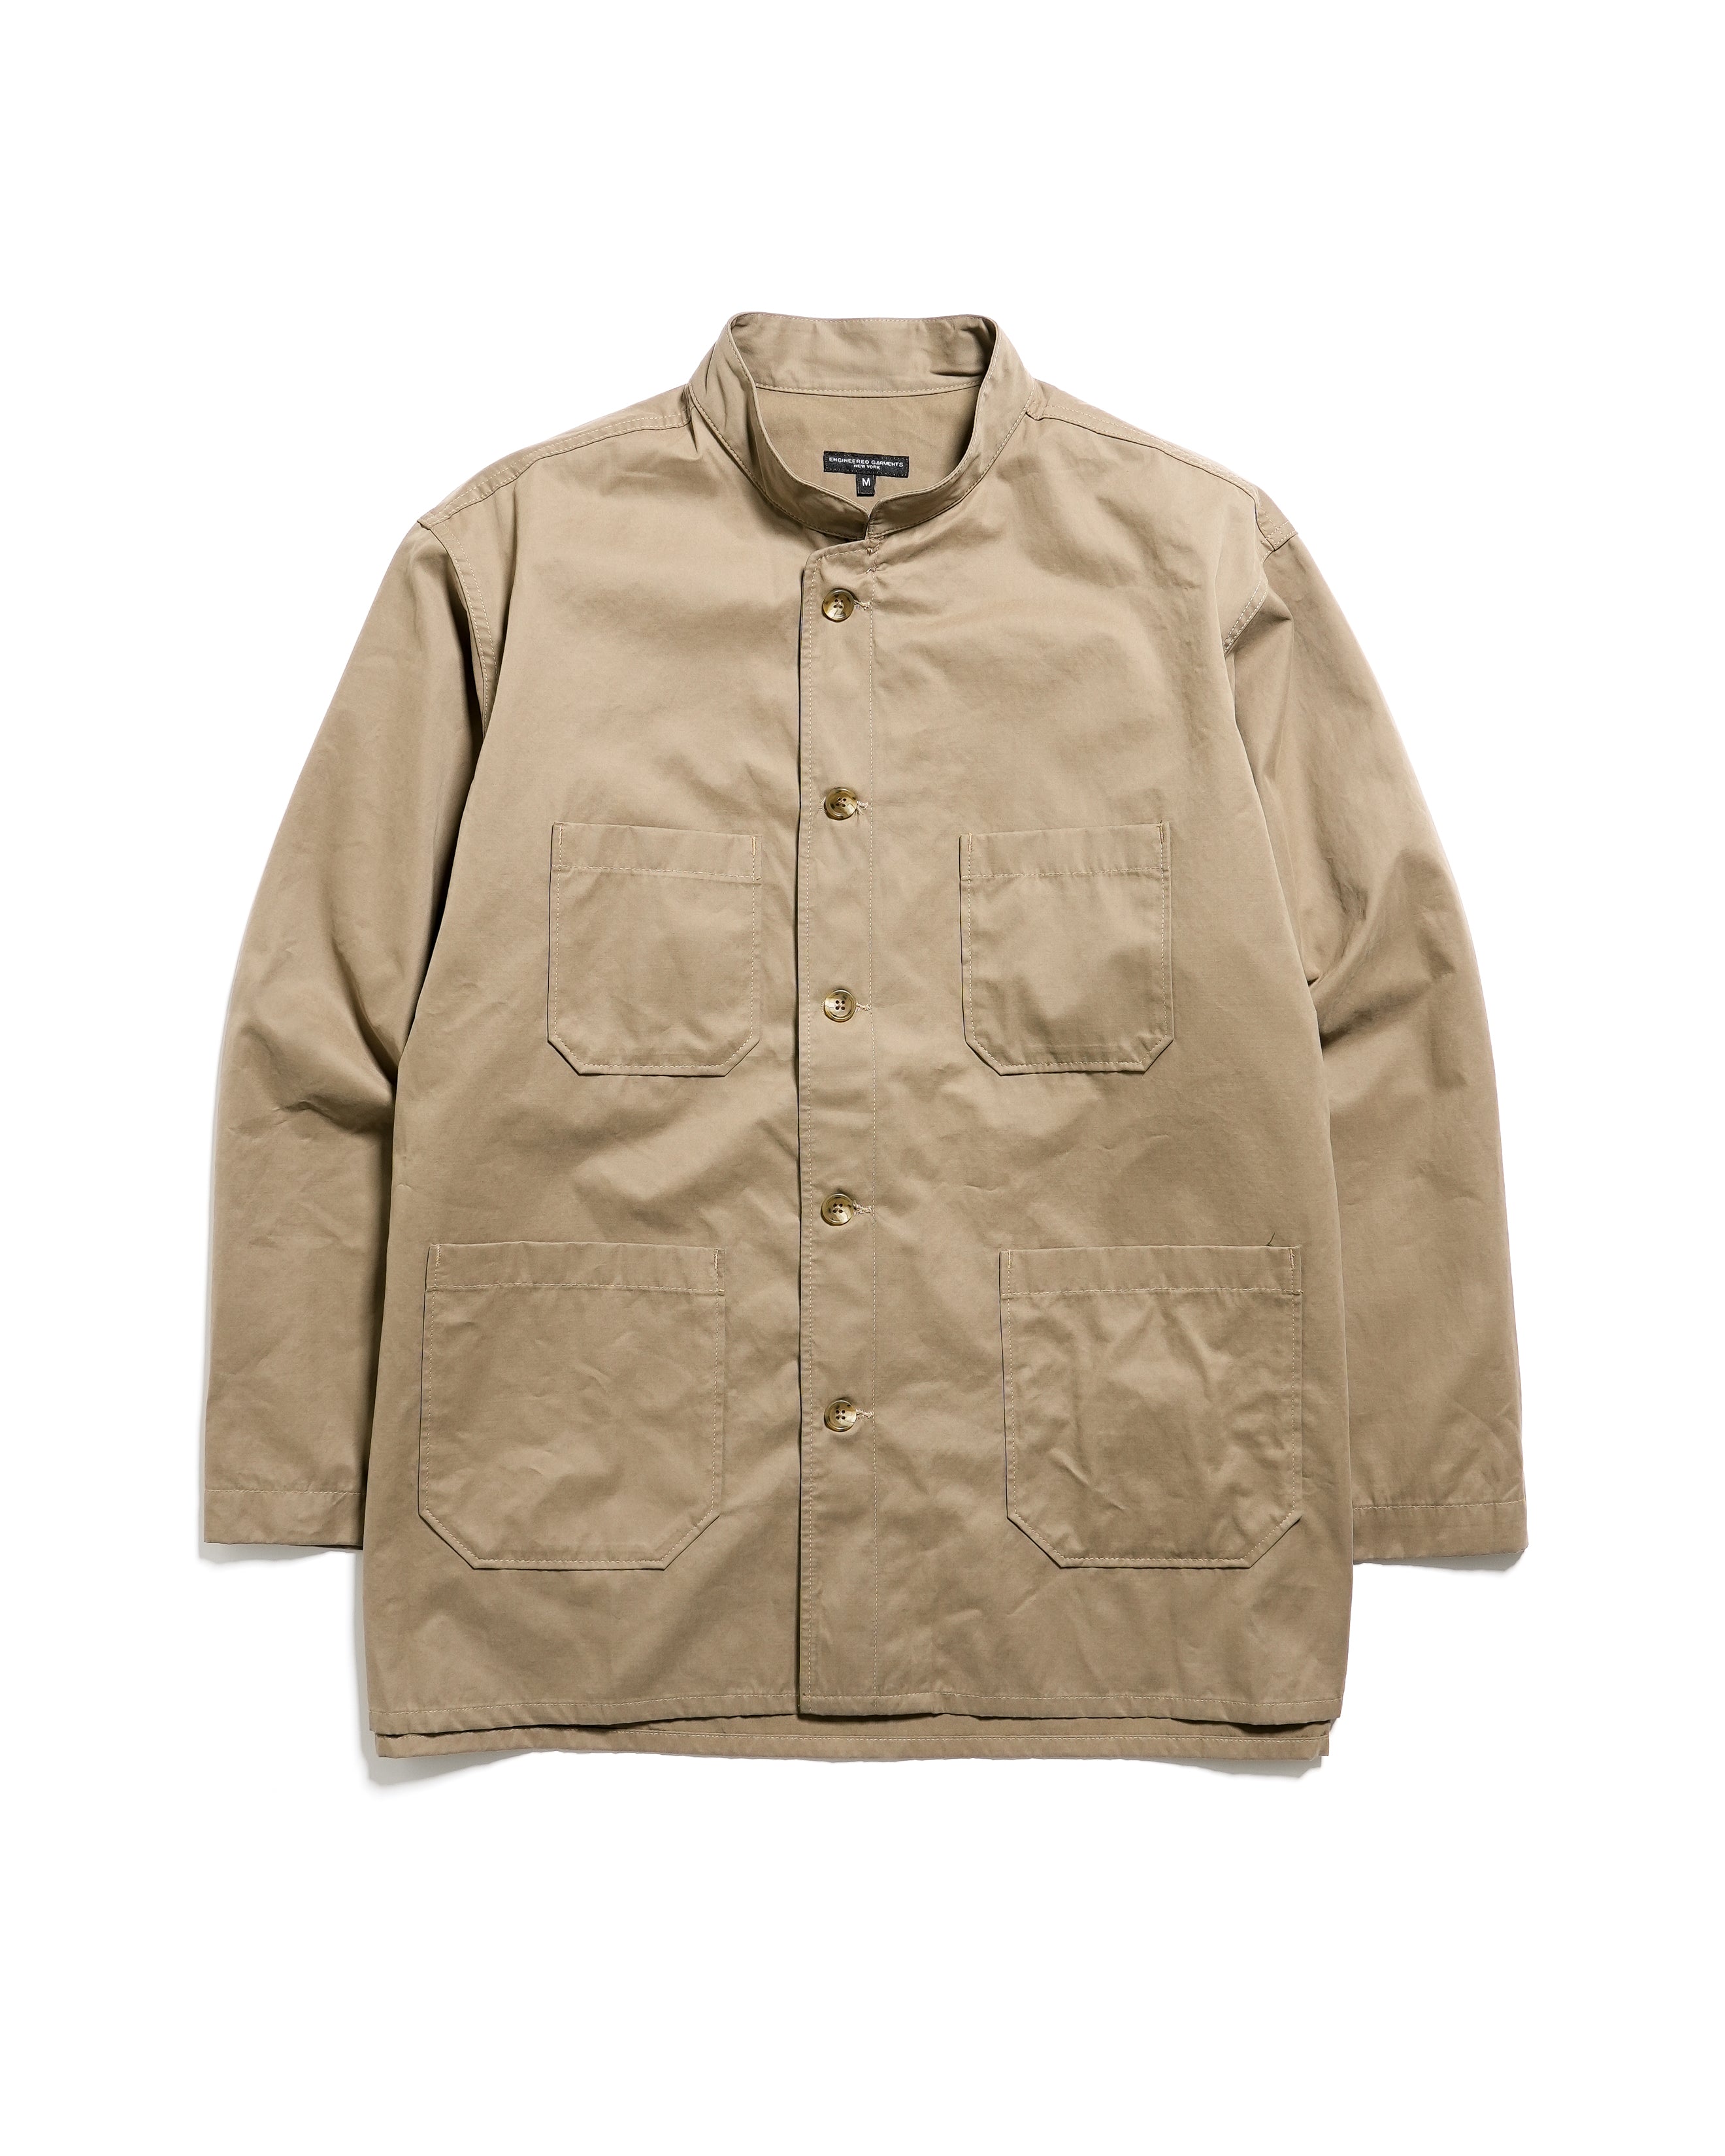 Dayton Shirt - Khaki PC Coated Cloth - NNY SP